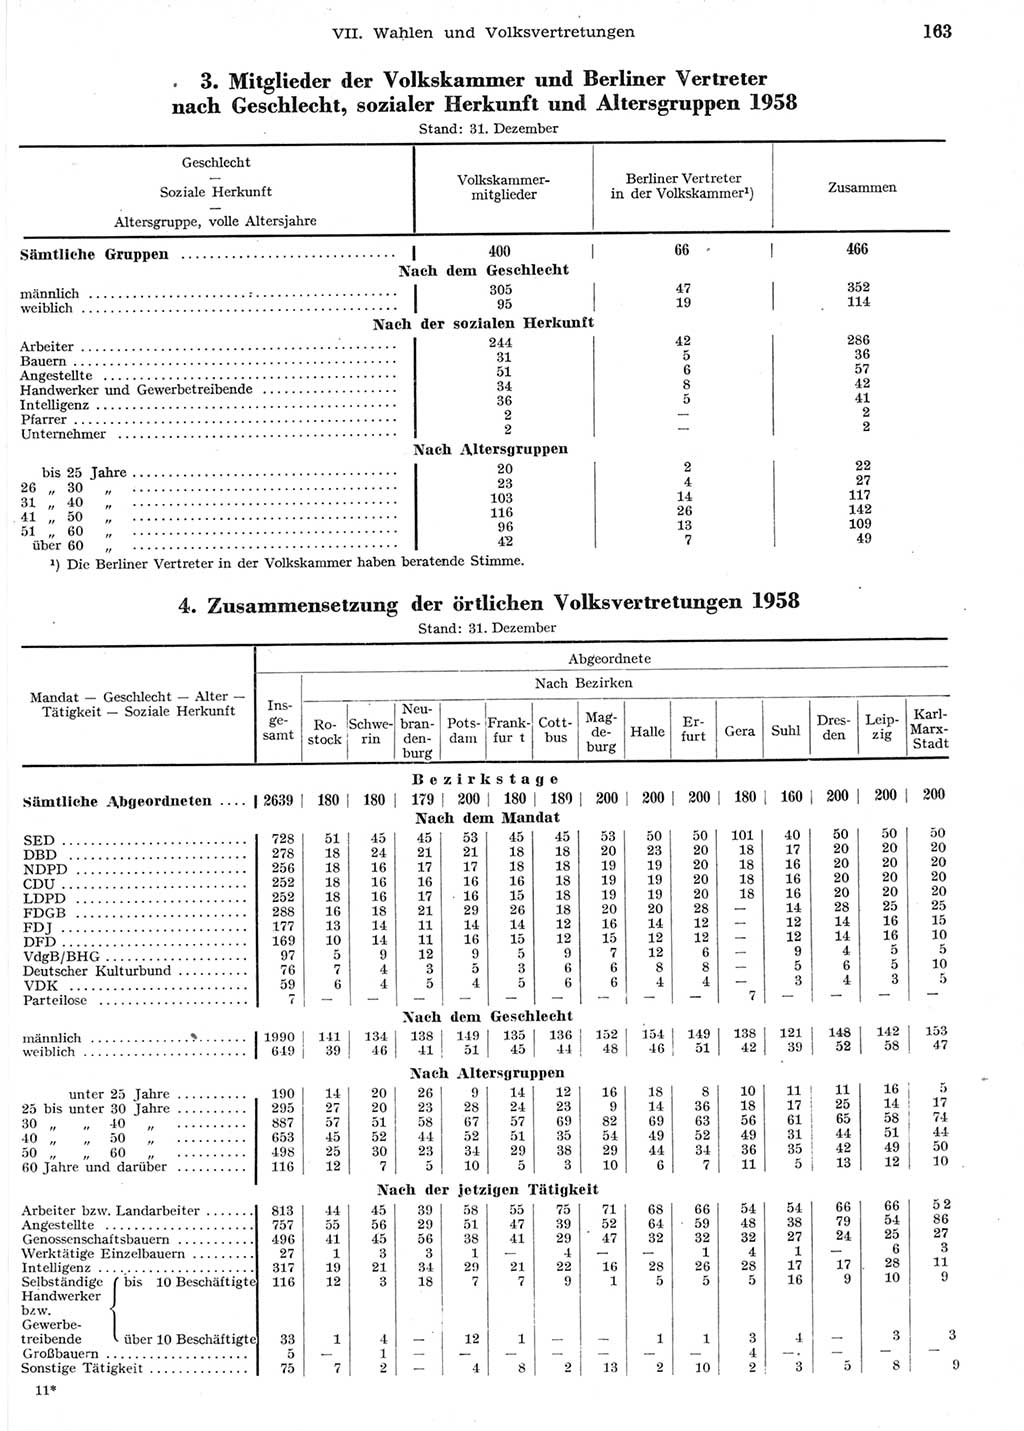 Statistisches Jahrbuch der Deutschen Demokratischen Republik (DDR) 1958, Seite 163 (Stat. Jb. DDR 1958, S. 163)